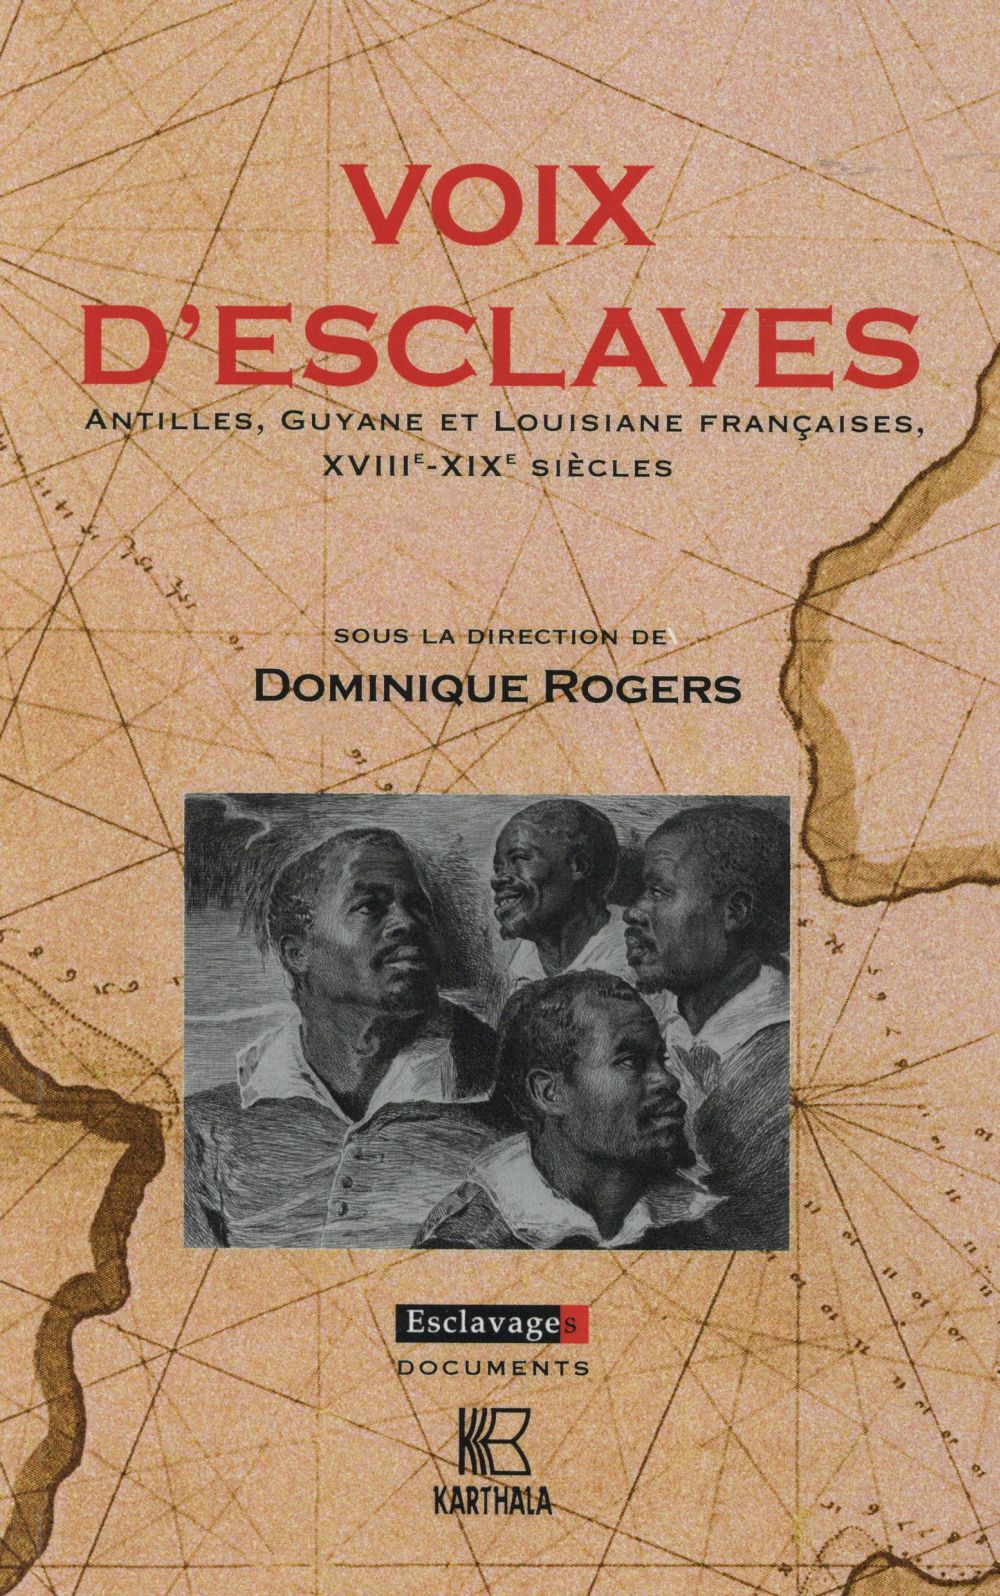 VOIX D'ESCLAVES - ANTILLES, GUYANE ET LOUISIANE FRANCAISES, XVIIIE-XIXE SIECLES